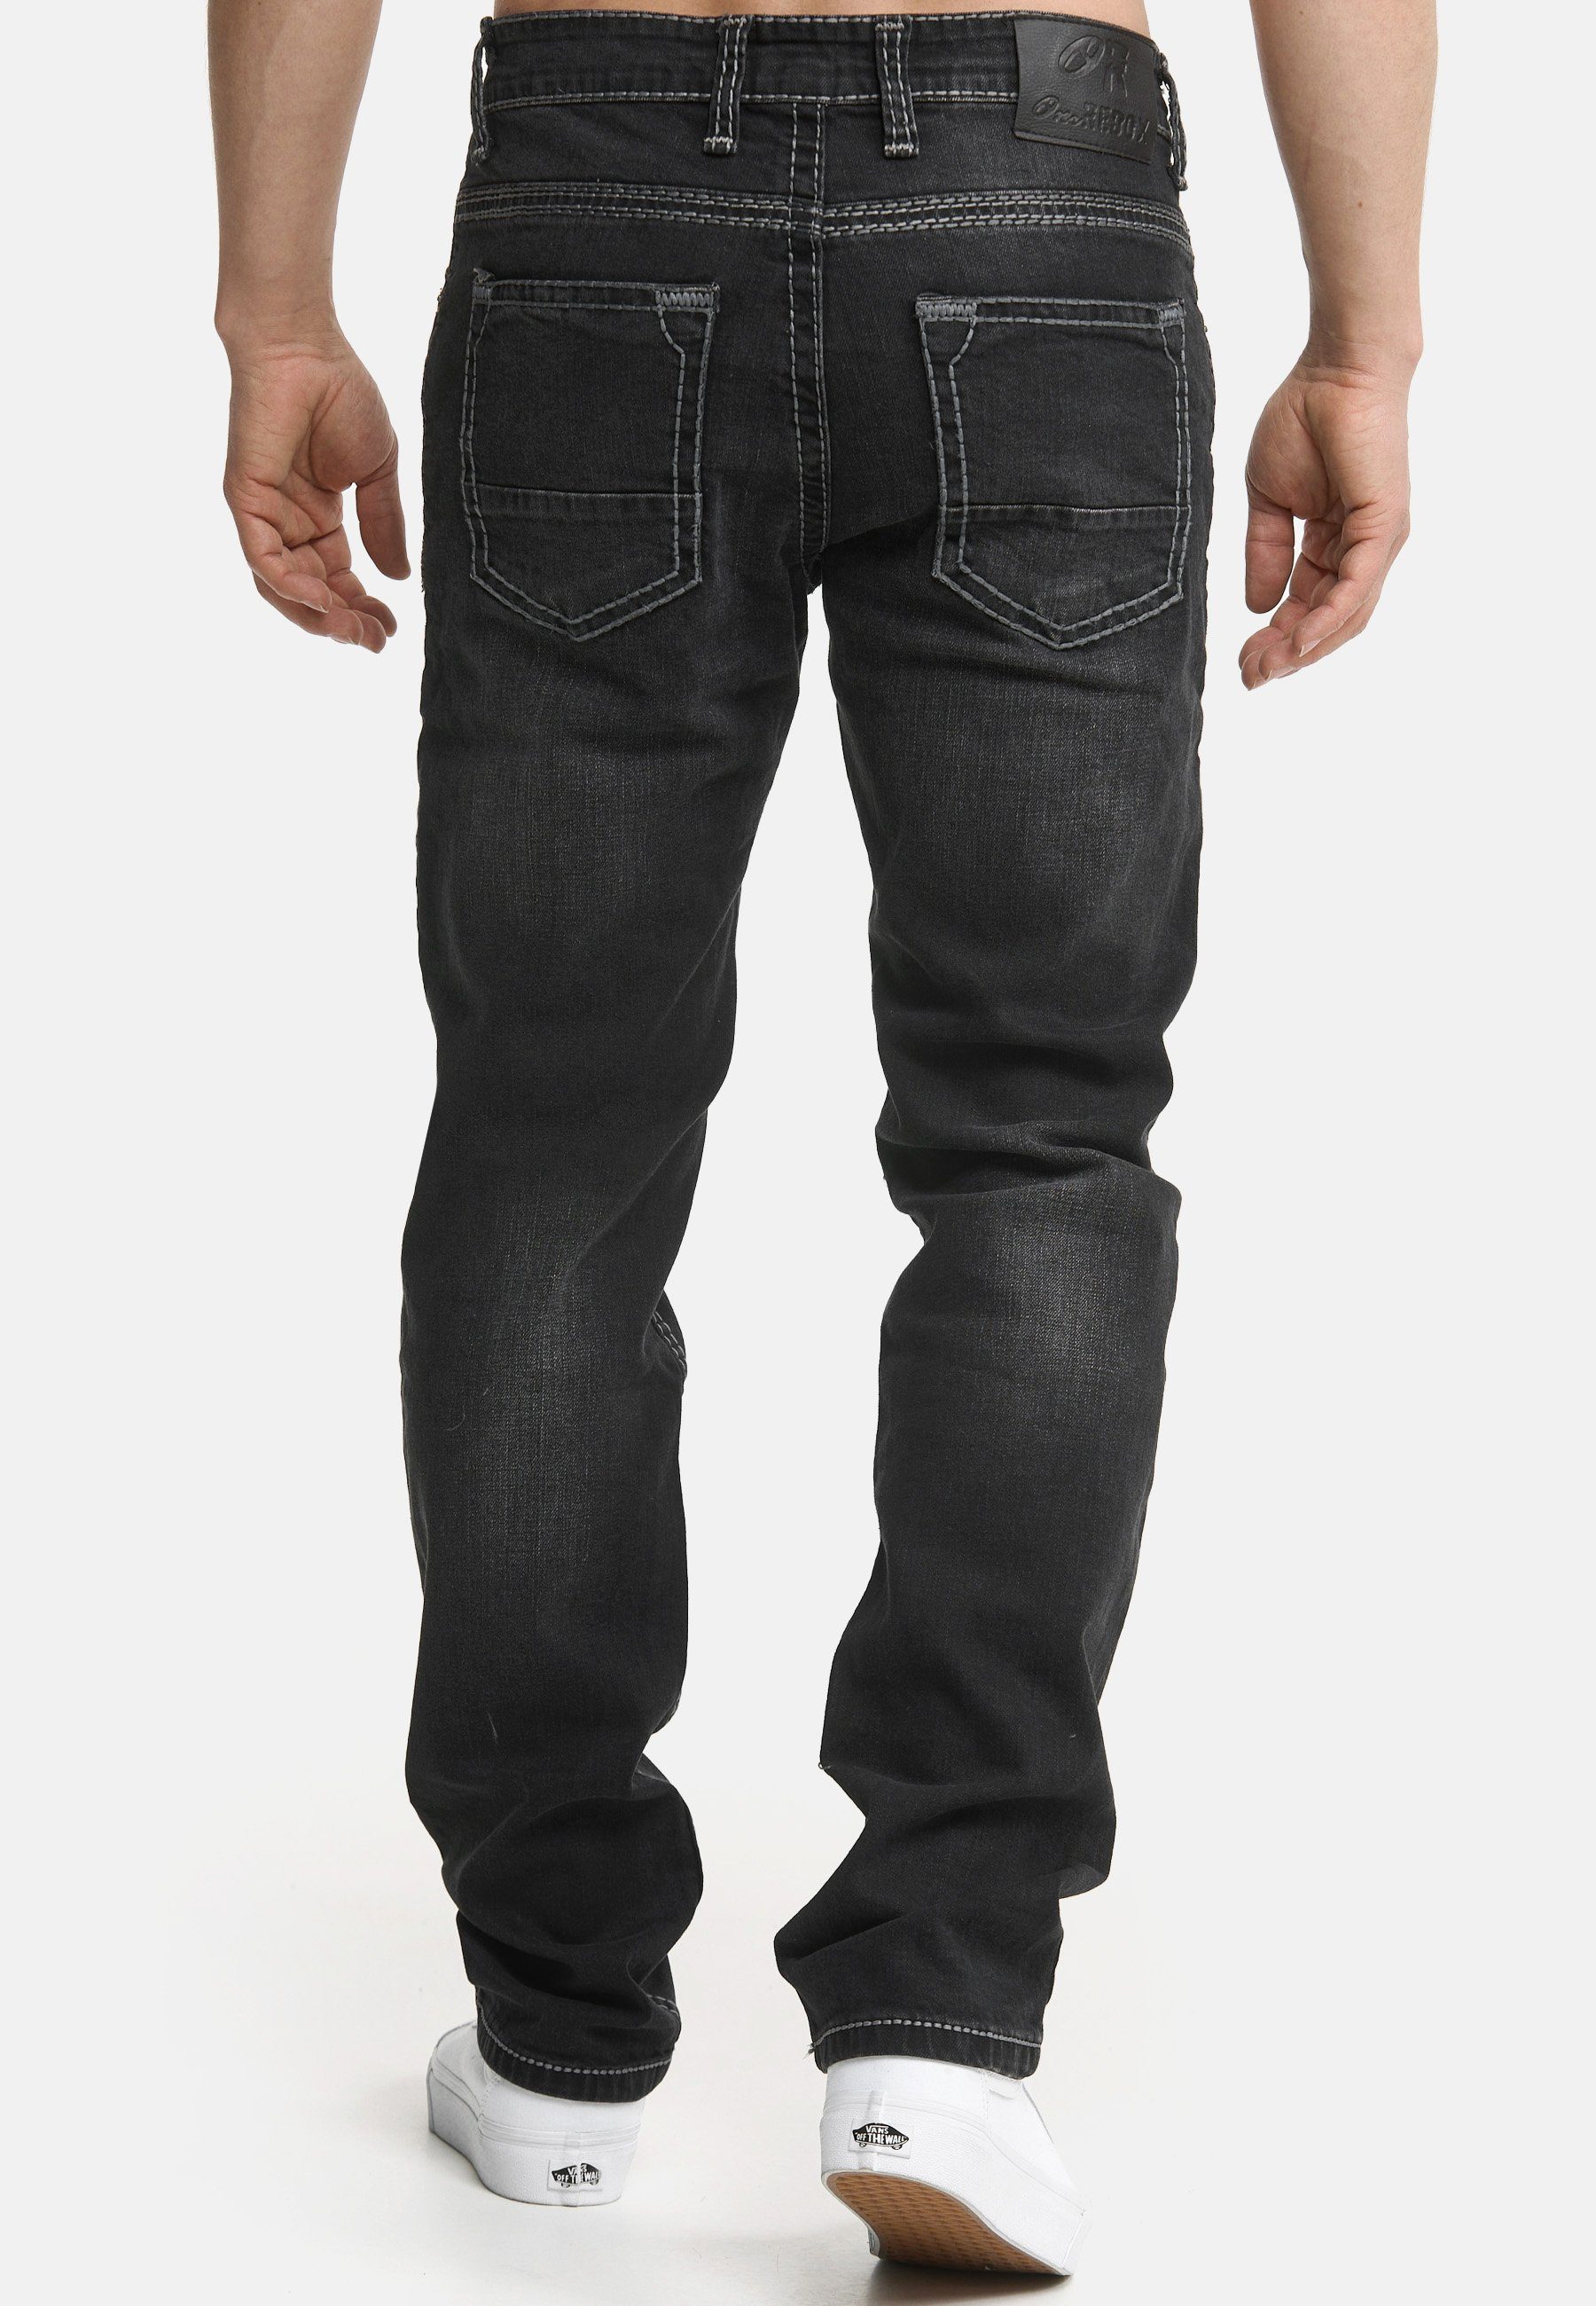 Regular-fit-Jeans Code47 Pocket Fit Denim Männer 902 light Regular Hose black Bootcut Herren Jeans Five Code47